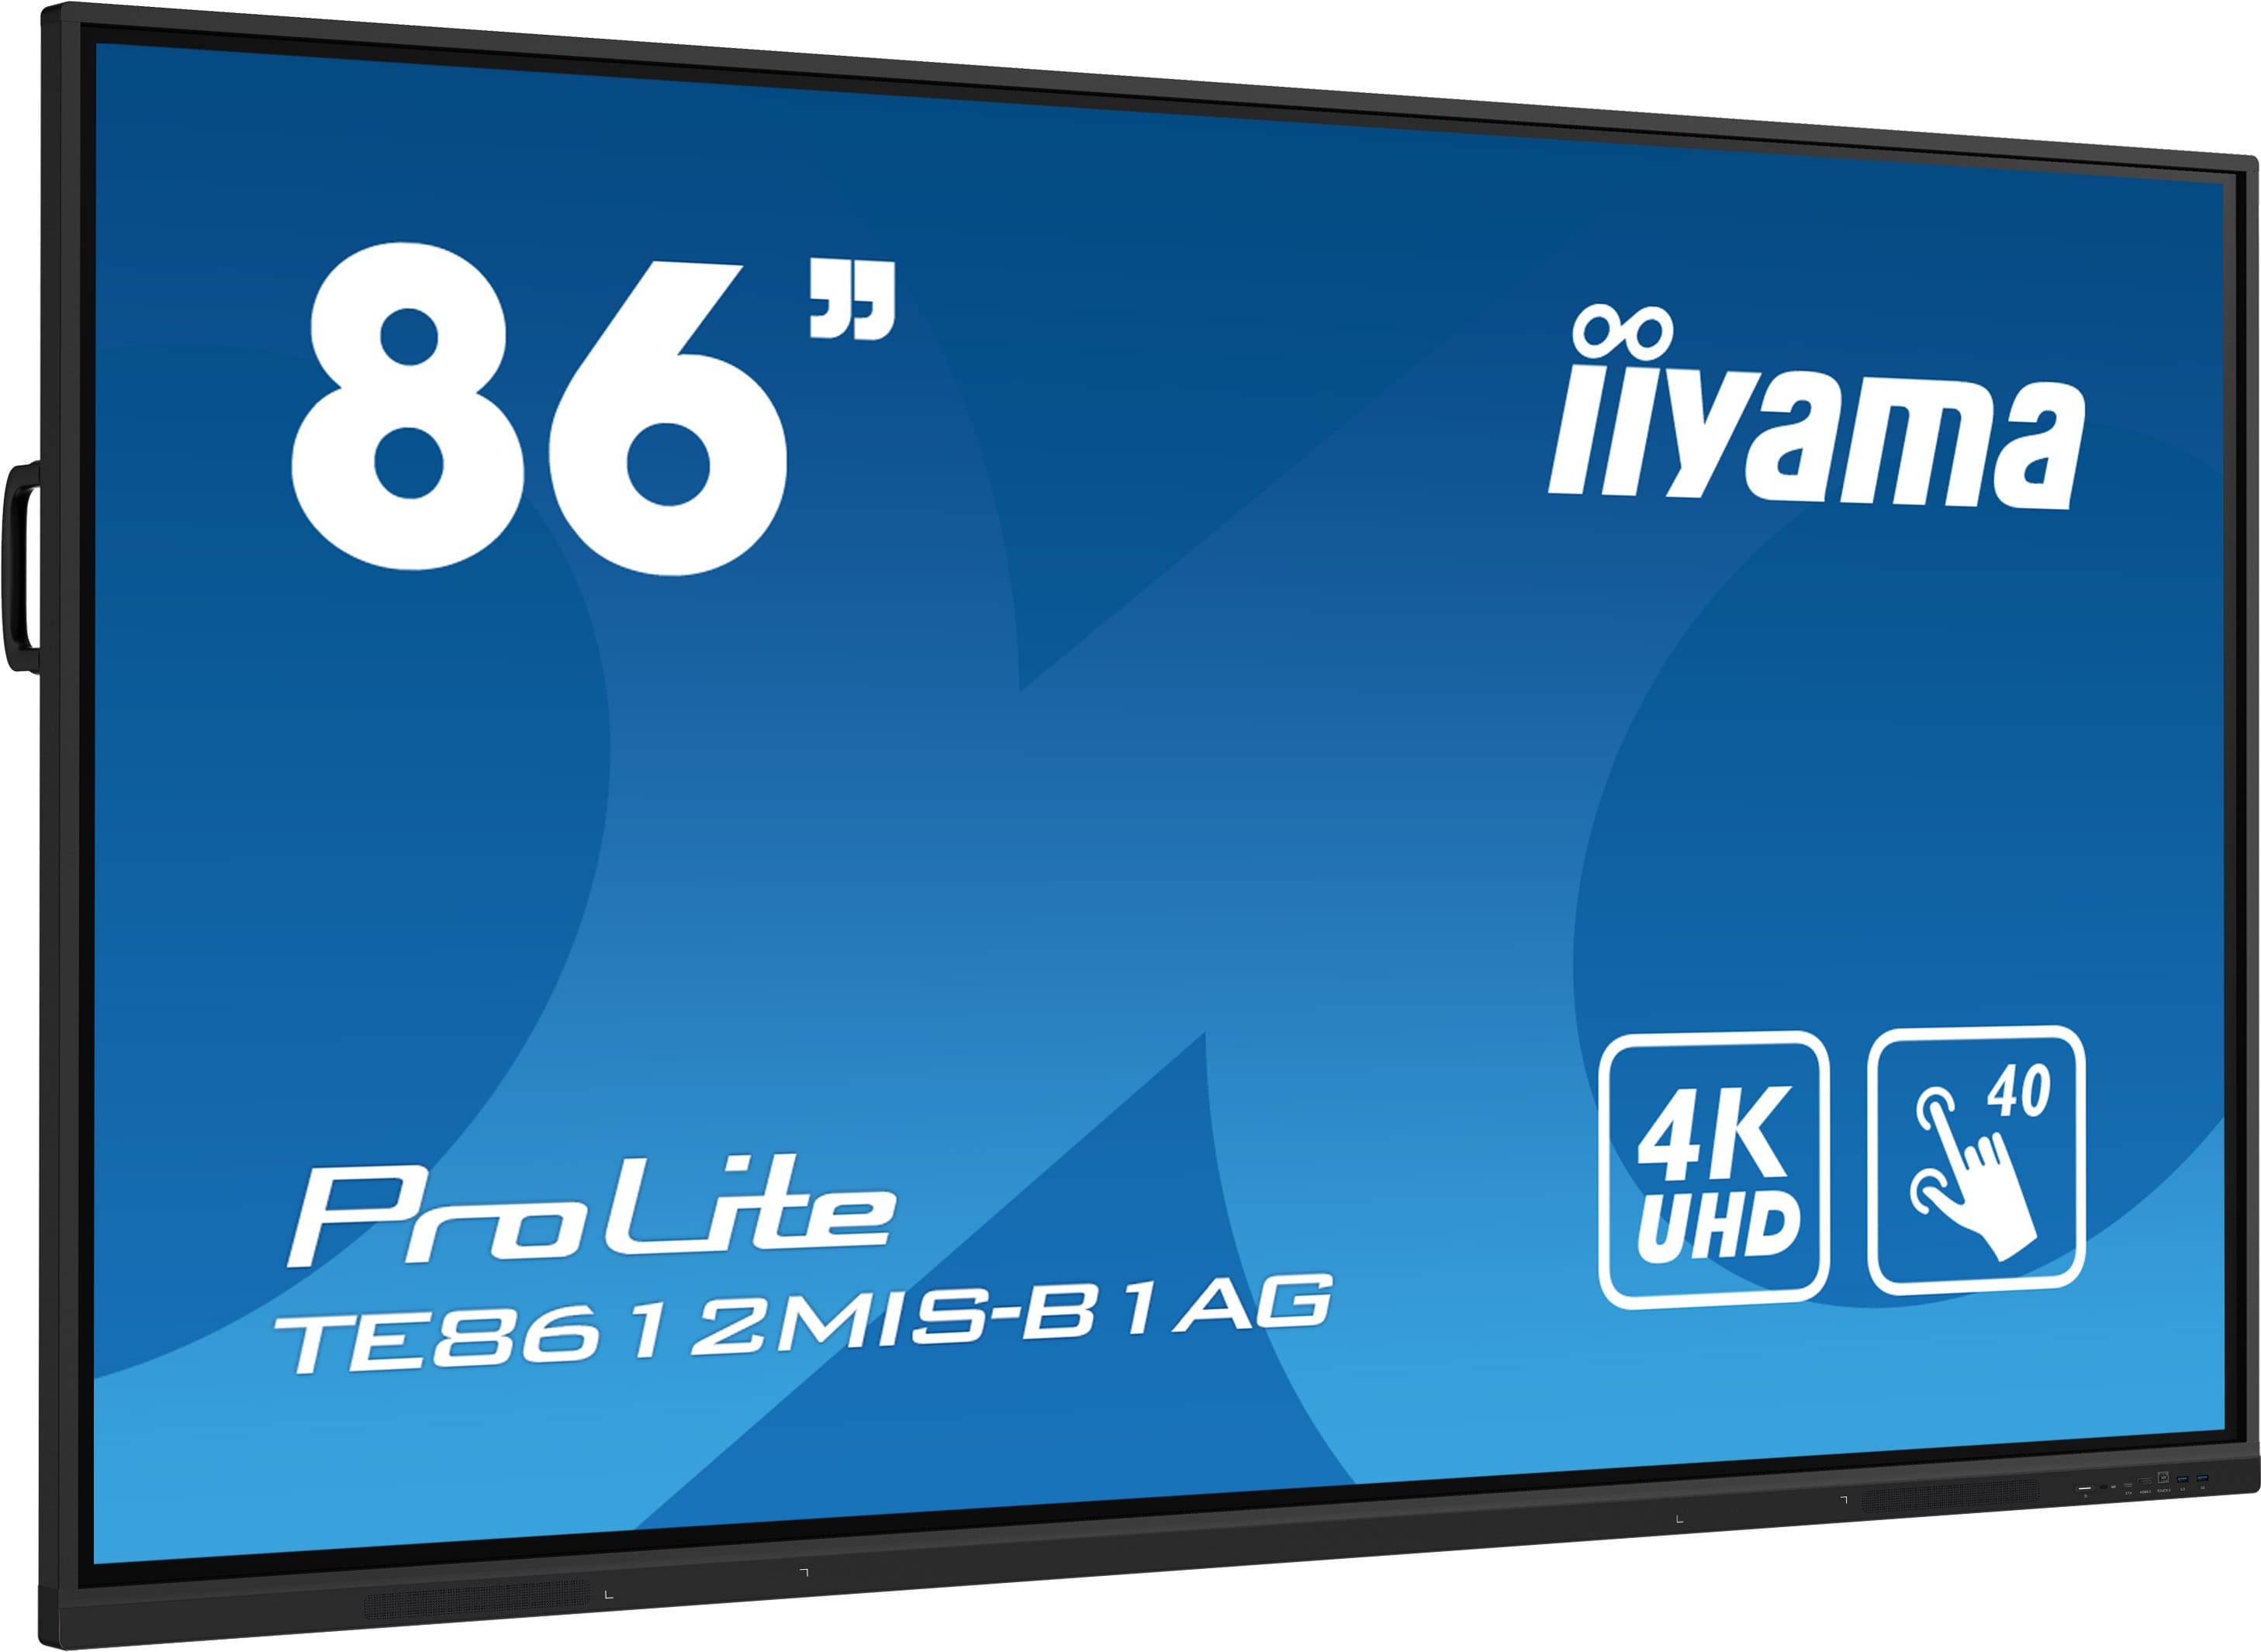 Iiyama ProLite TE8612MIS-B1AG | Interaktives 86" (᠎᠎217.4﻿ cm) LCD Touchscreen-Display mit 4K-Auflösung, integrierter Whiteboard-Software und Benutzerprofilen